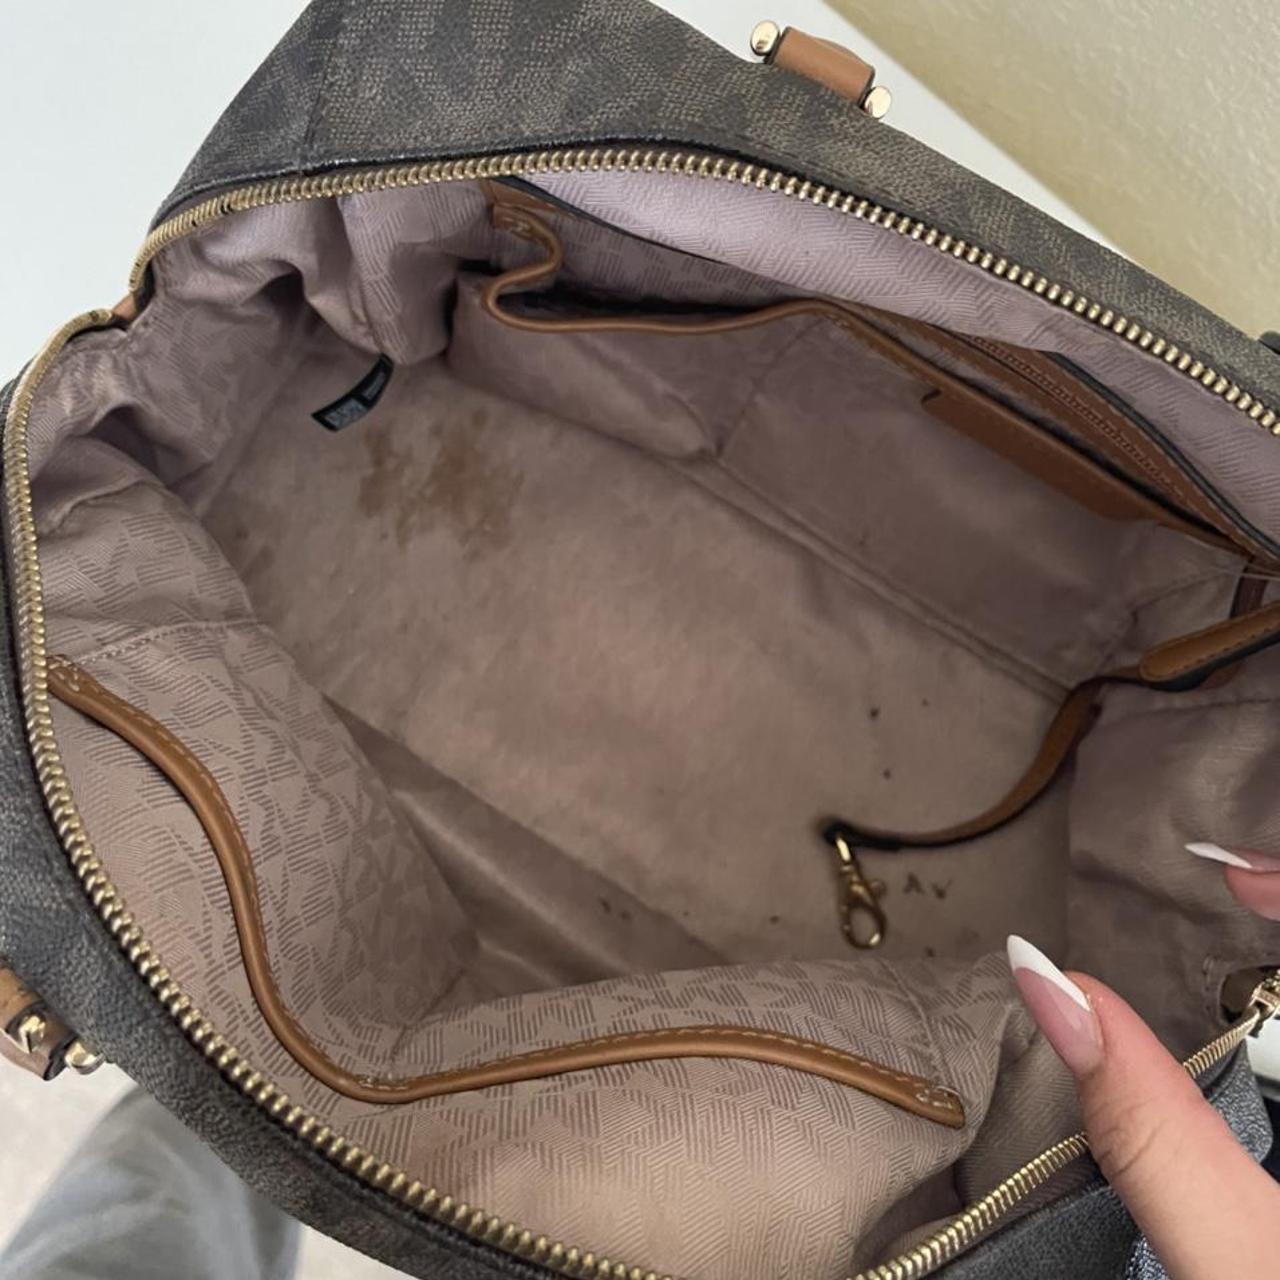 Order Women's Michael Kors MK Speedy Handbags Online From Branded